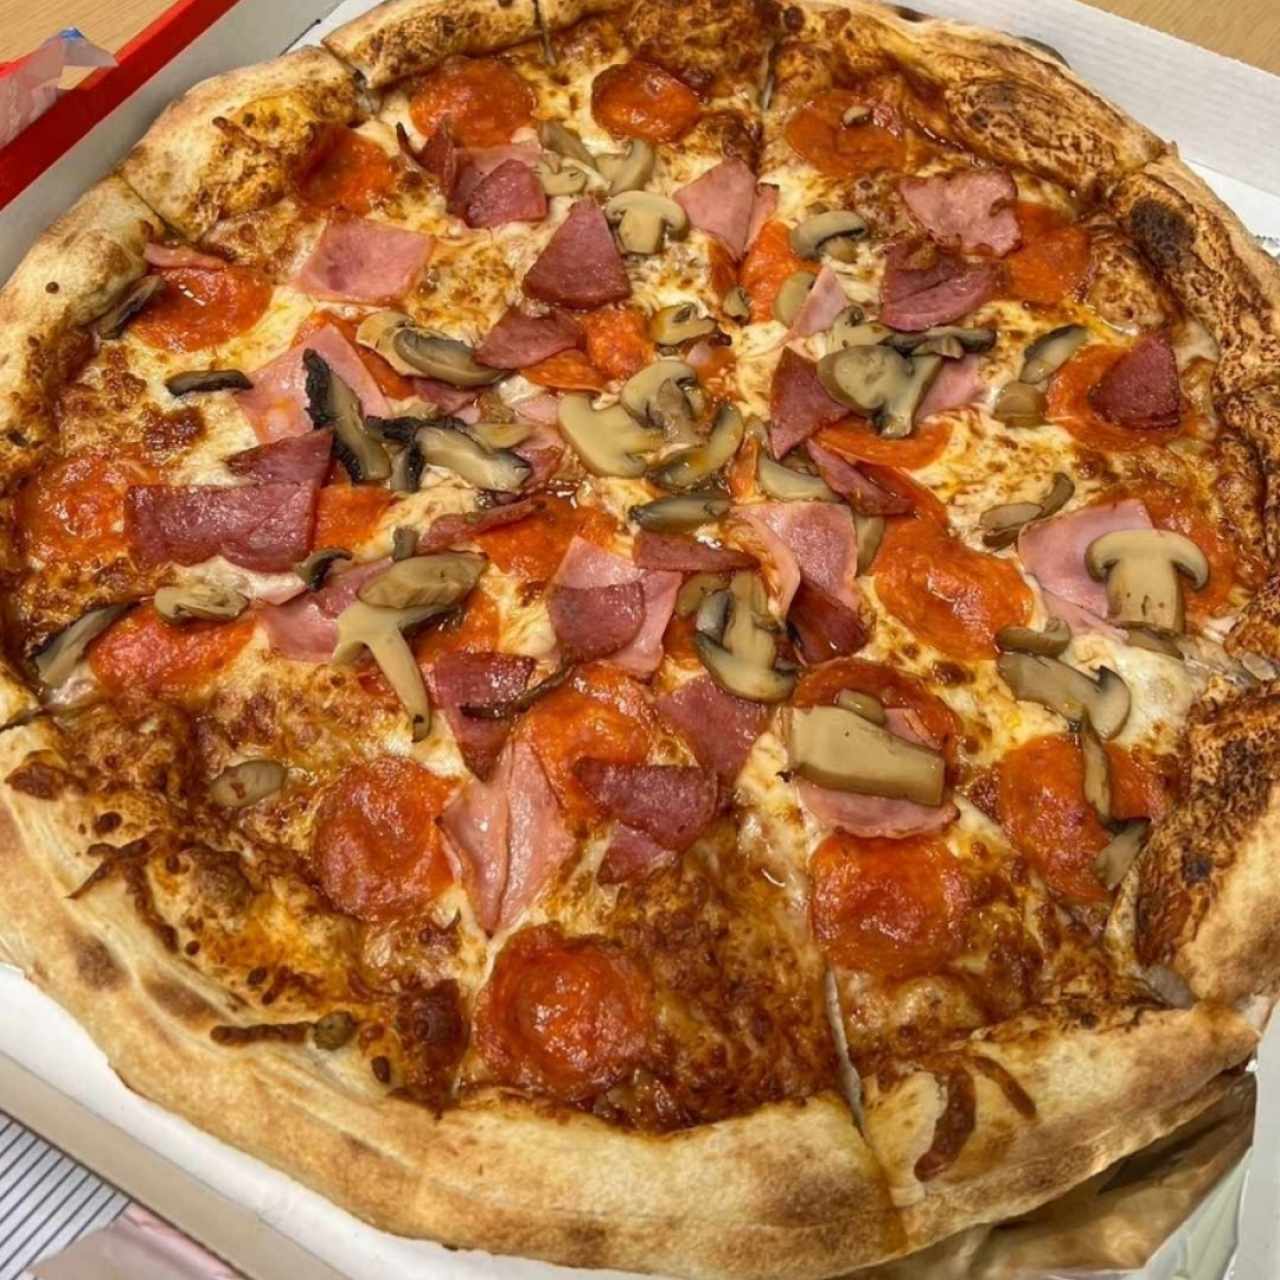 Pizzas - Pizza Italia